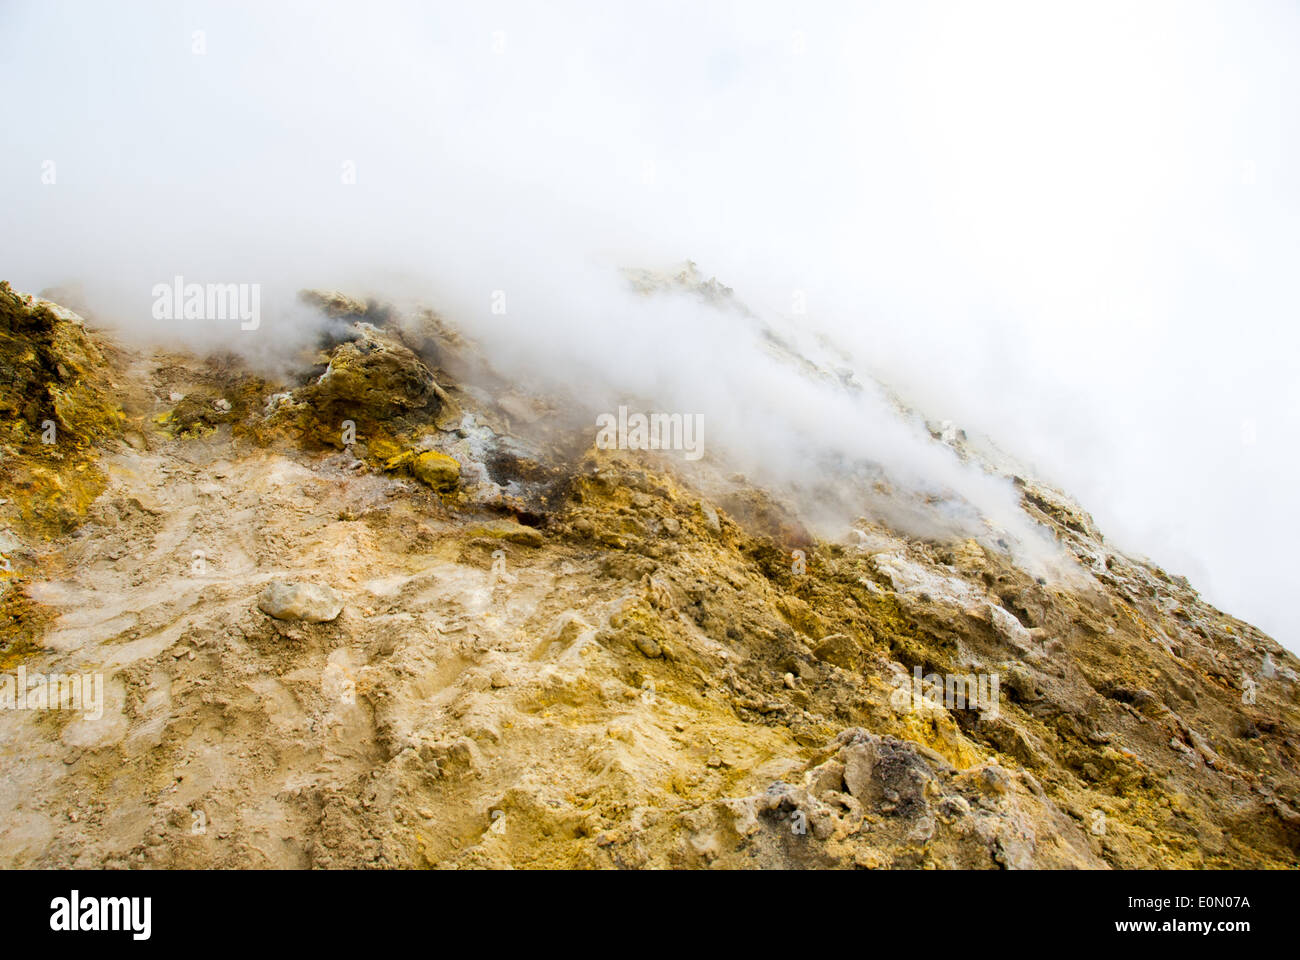 Sulla sommità del vulcano Etna il rock è coperto con zolfo e diventa gialla, nube di gas tossico diffuso dal cratere Foto Stock